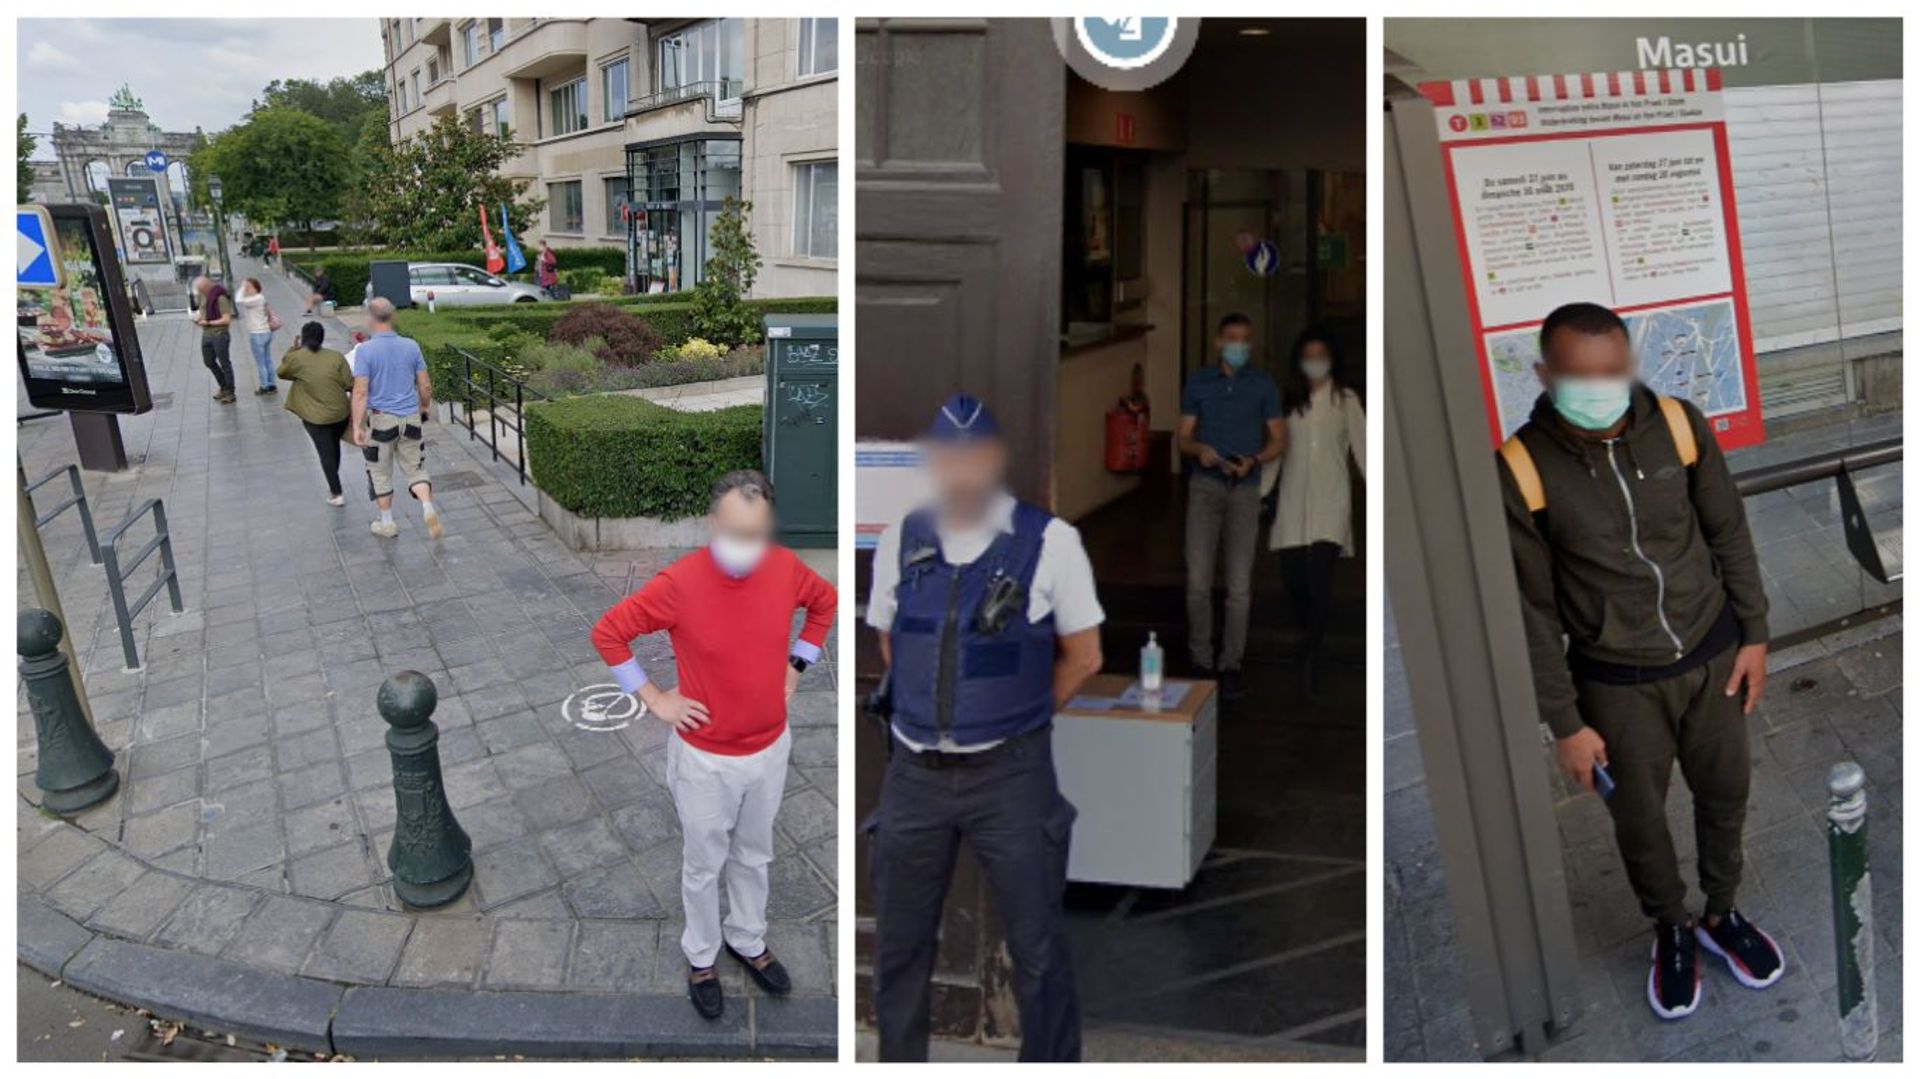 Masques en rue, aux arrêts de tram, dans les bâtiments publics: Google Street View fige Bruxelles en mode coronavirus.